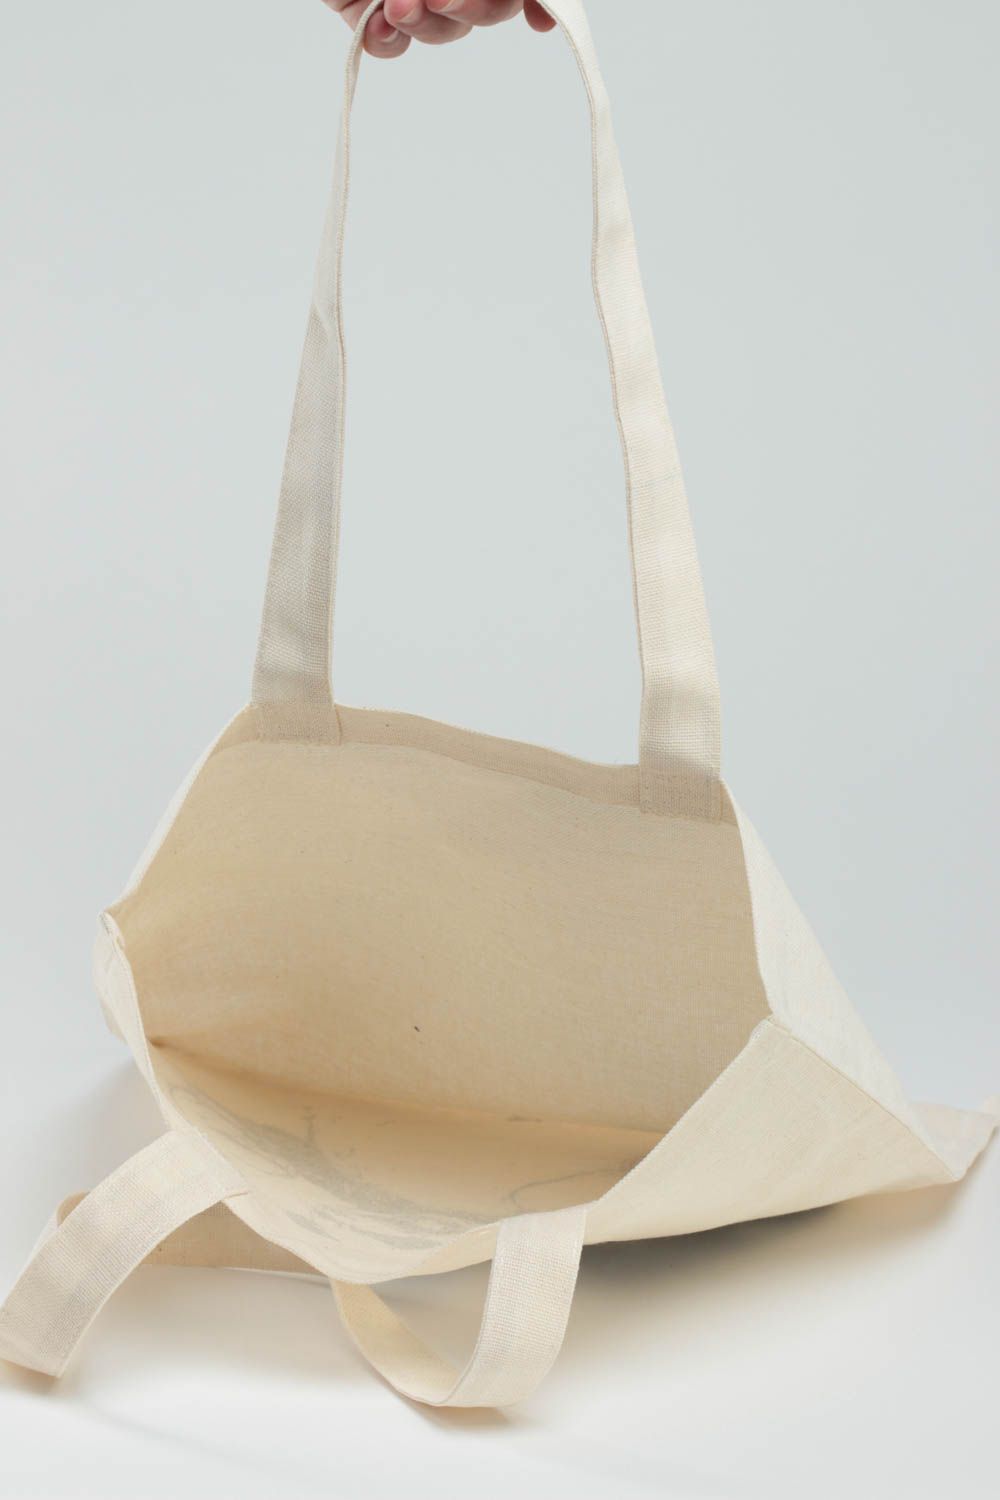 Handmade Handtasche aus Stoff in Weiß originell stilvoll mit Panda Muster  foto 4